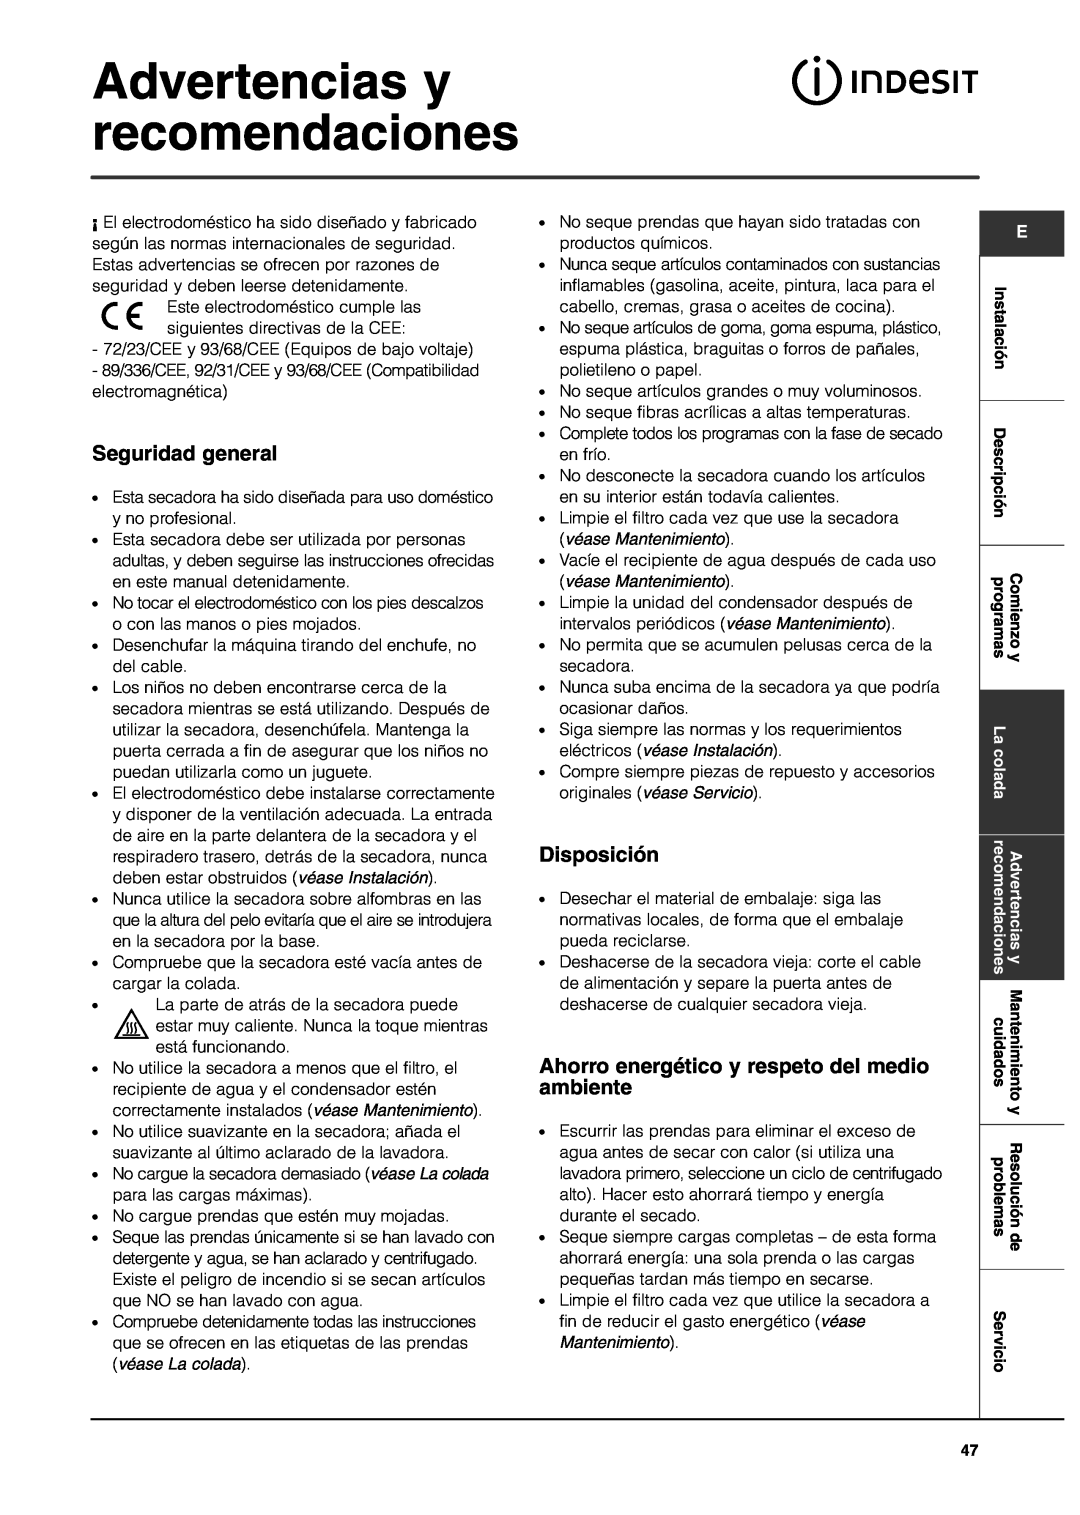 Indesit IS70C manual Advertencias y recomendaciones, Seguridad general, Disposición 